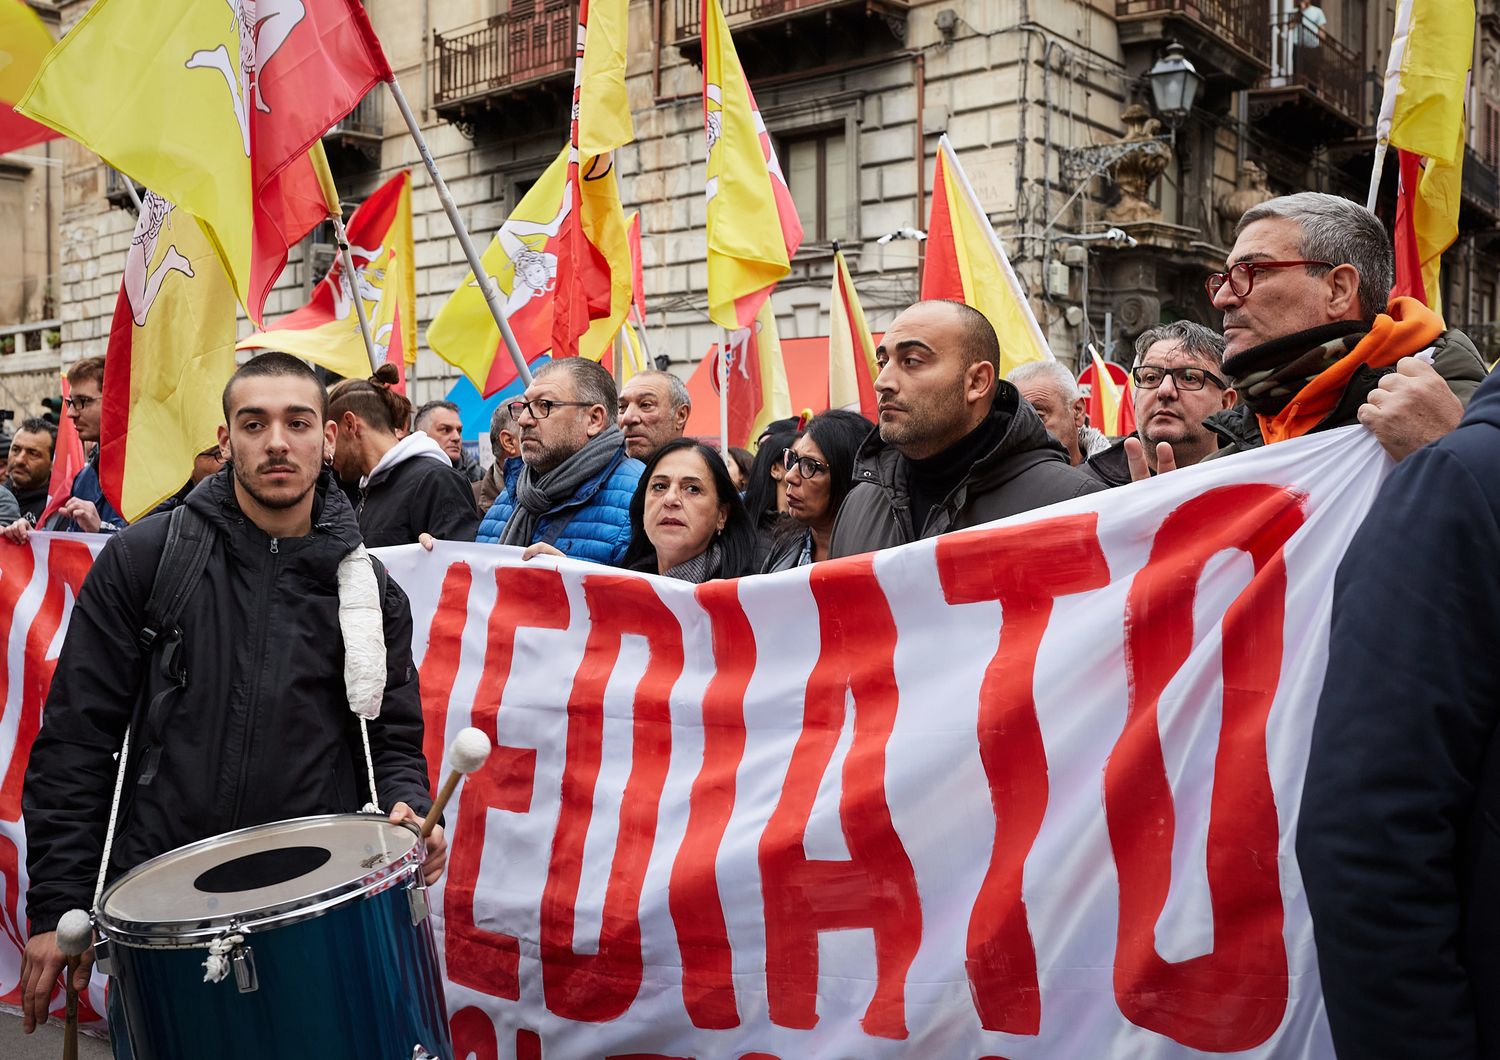 Manifestazione per il reddito di cittadinanza a Palermo